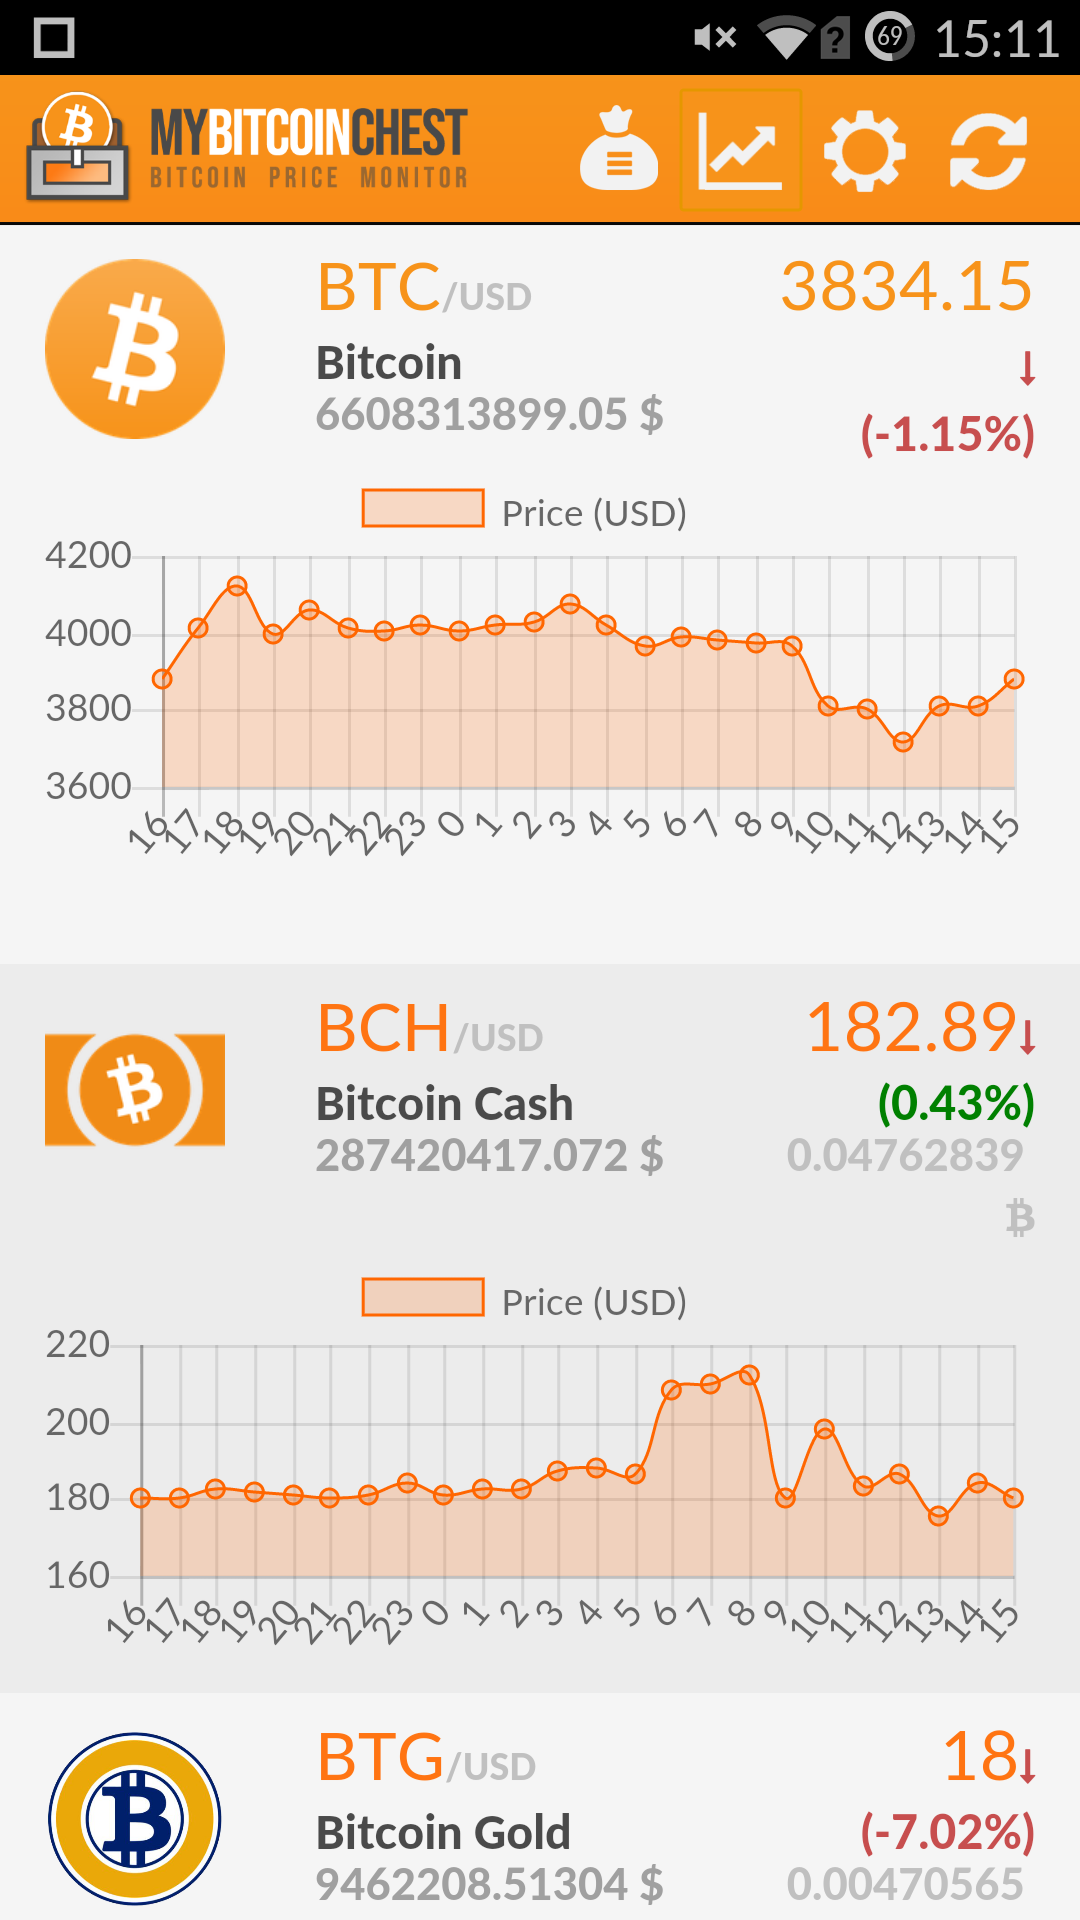 My Bitcoin Chest - Bitcoin Price Monitor